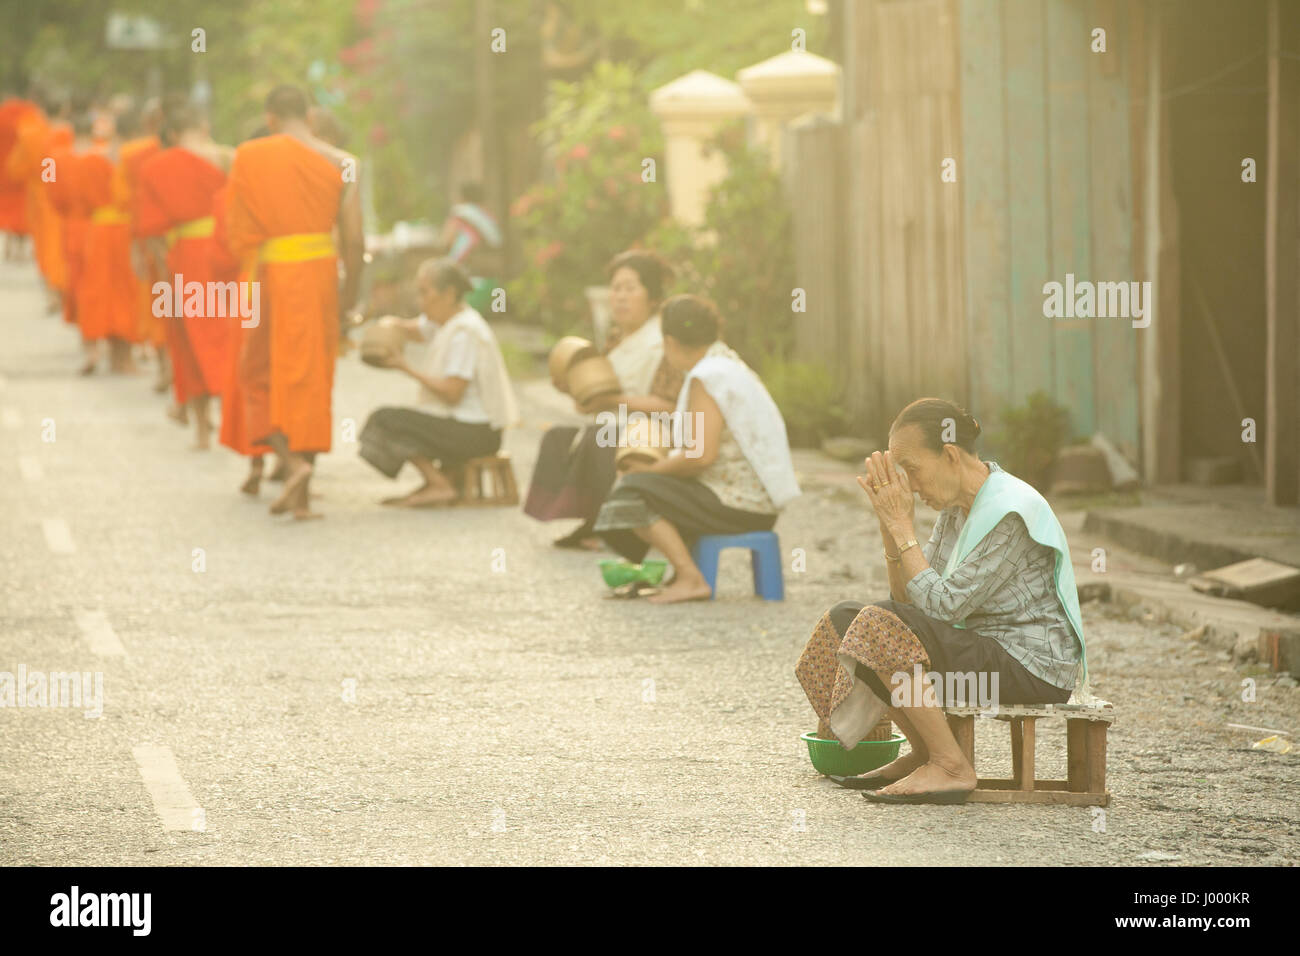 La República Democrática Popular Lao, Laos, Luang Prabang - 20 DE JUNIO: Mujer ora después de dar limosna a los monjes budistas en la calle, en Luang Prabang. Foto de stock